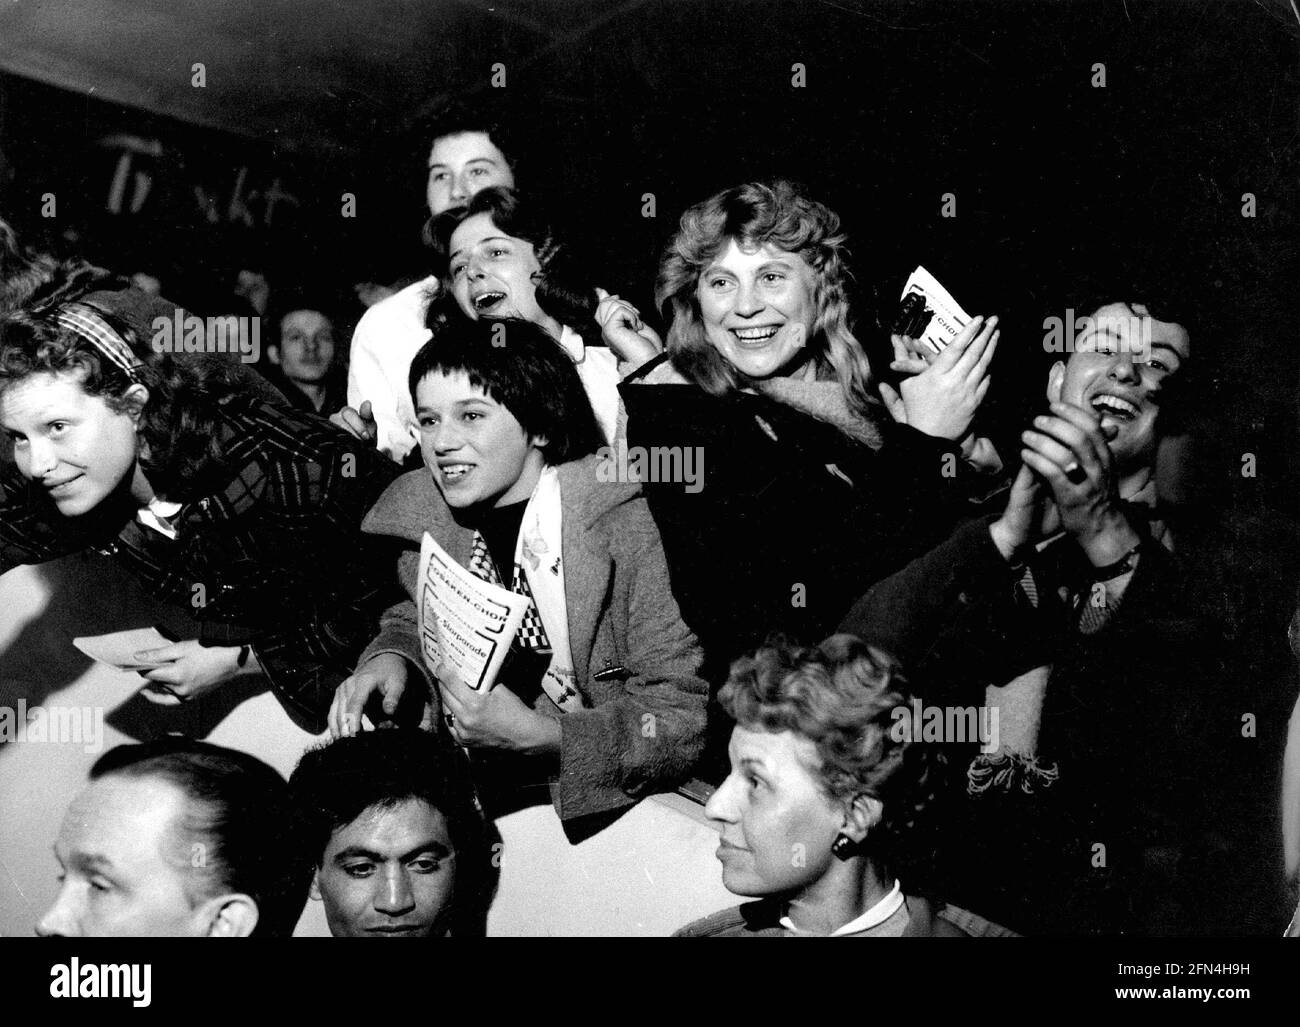 Les gens, les jeunes, les fans d'Elvis Presley au concert de Bill Haley, Francfort-sur-le-main, 23.10.1958, DROITS-SUPPLÉMENTAIRES-AUTORISATION-INFO-NON-DISPONIBLE Banque D'Images